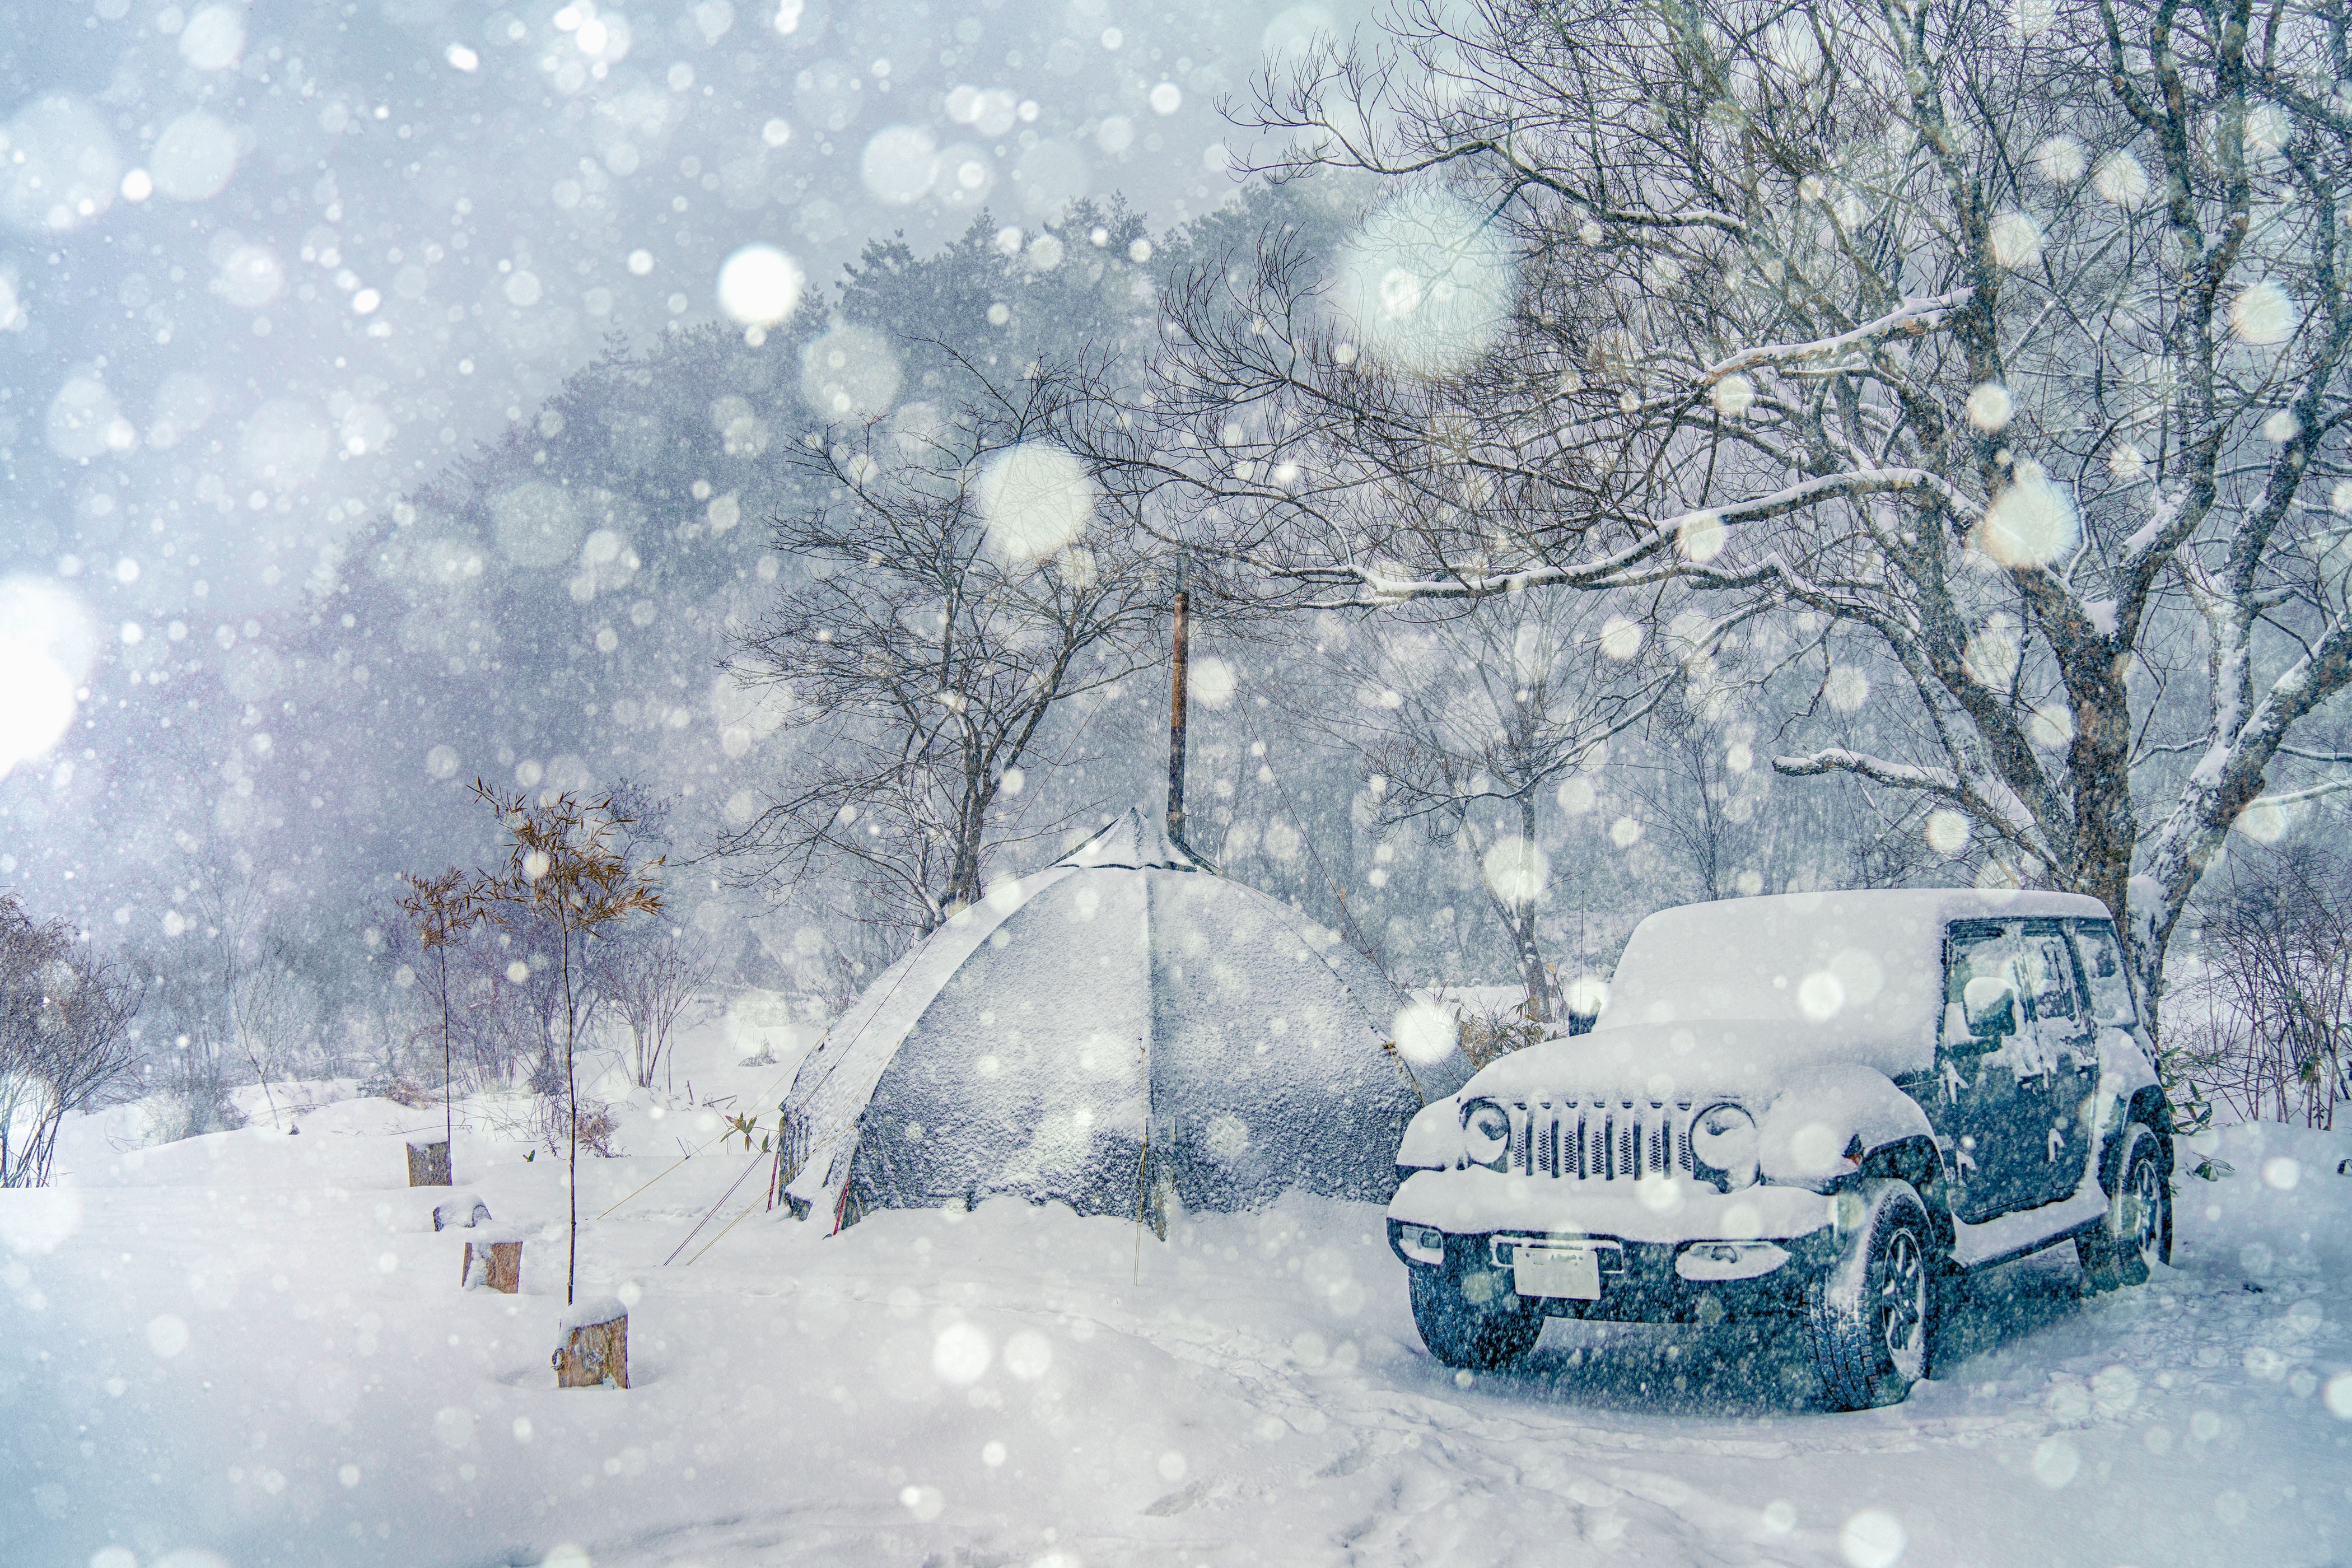 降りしきる雪で車もテントも雪景色の中に溶けていく